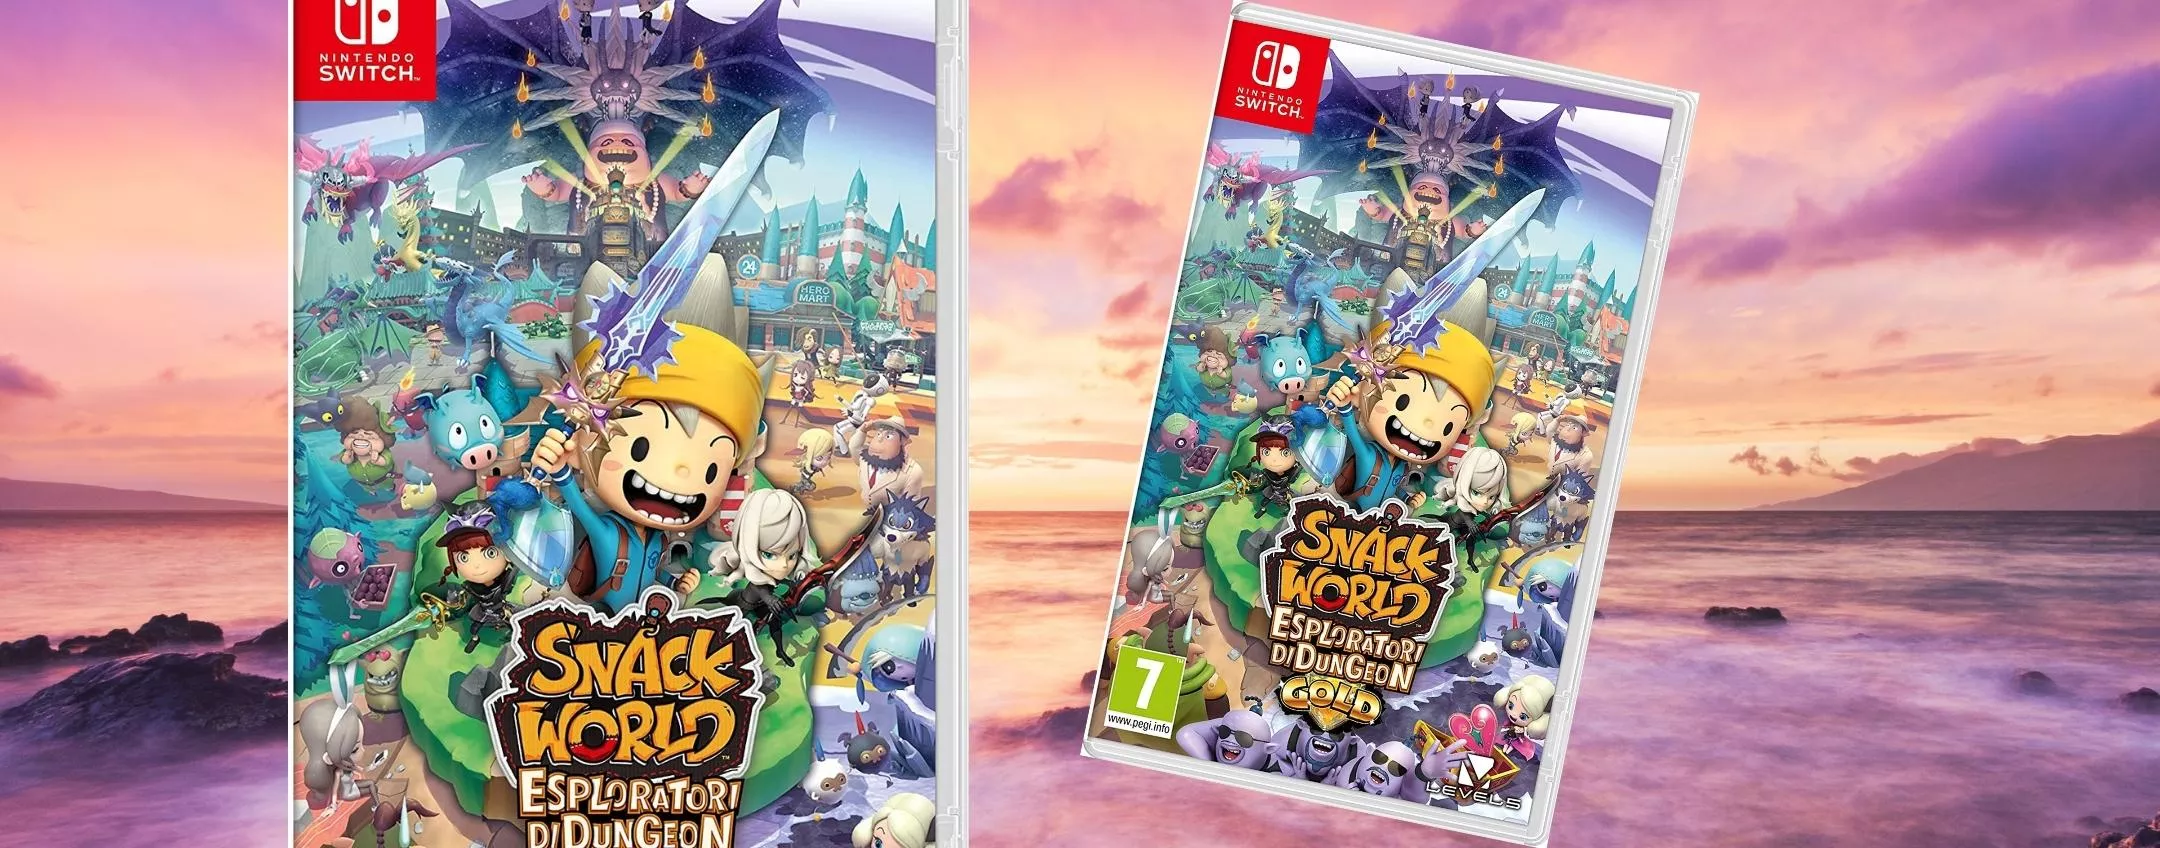 Snack World per Nintendo Switch, il regalo perfetto ora che costa 19€